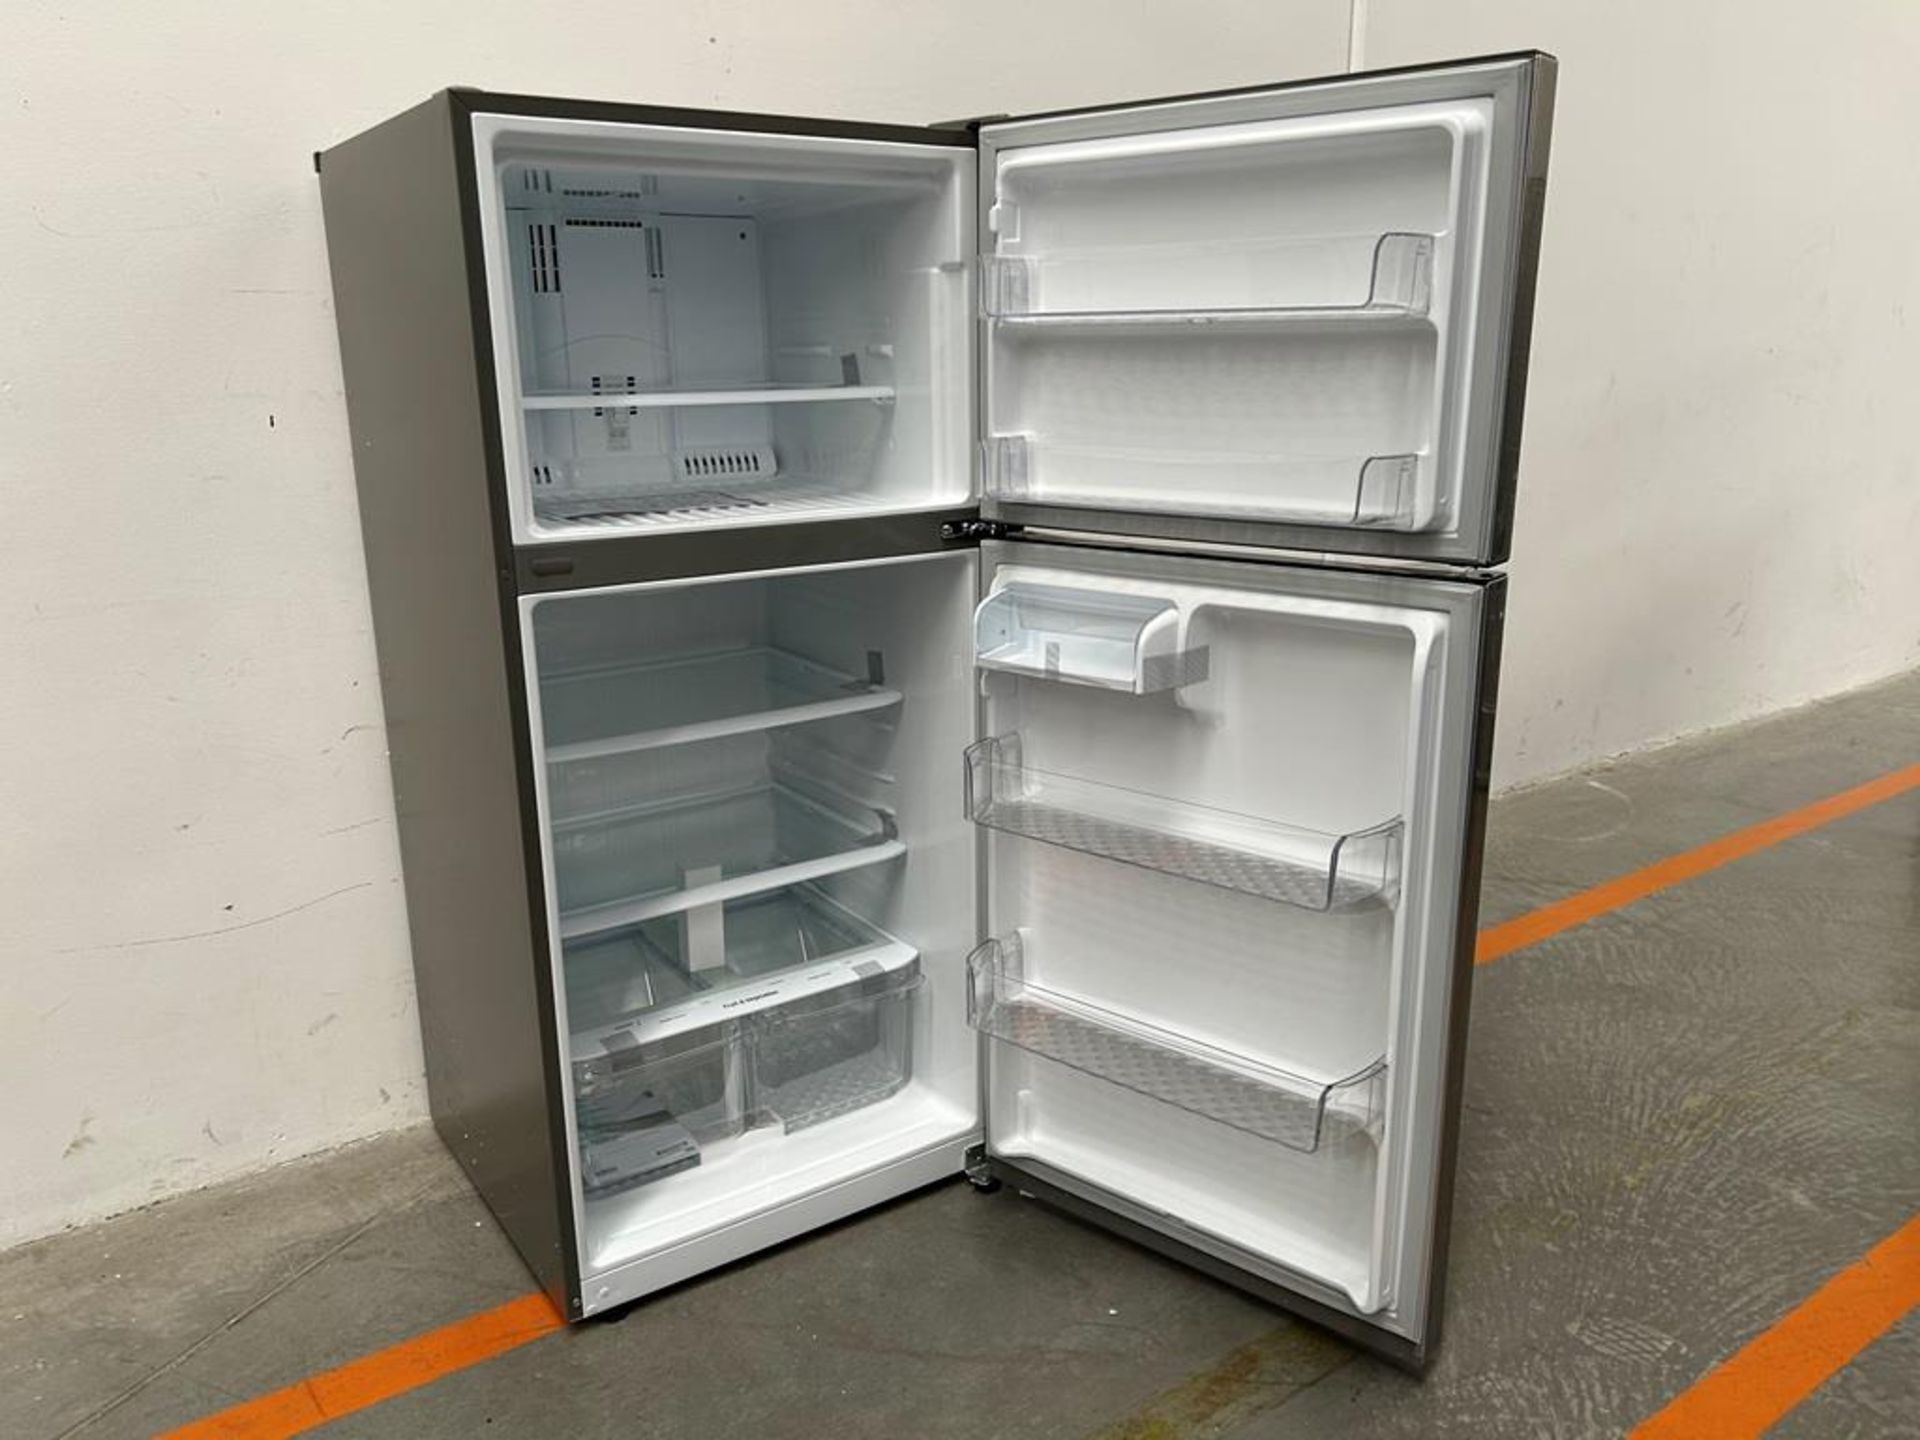 (NUEVO) Refrigerador Marca LG, Modelo LT57BPSX, Serie D1X339, Color GRIS - Image 4 of 11